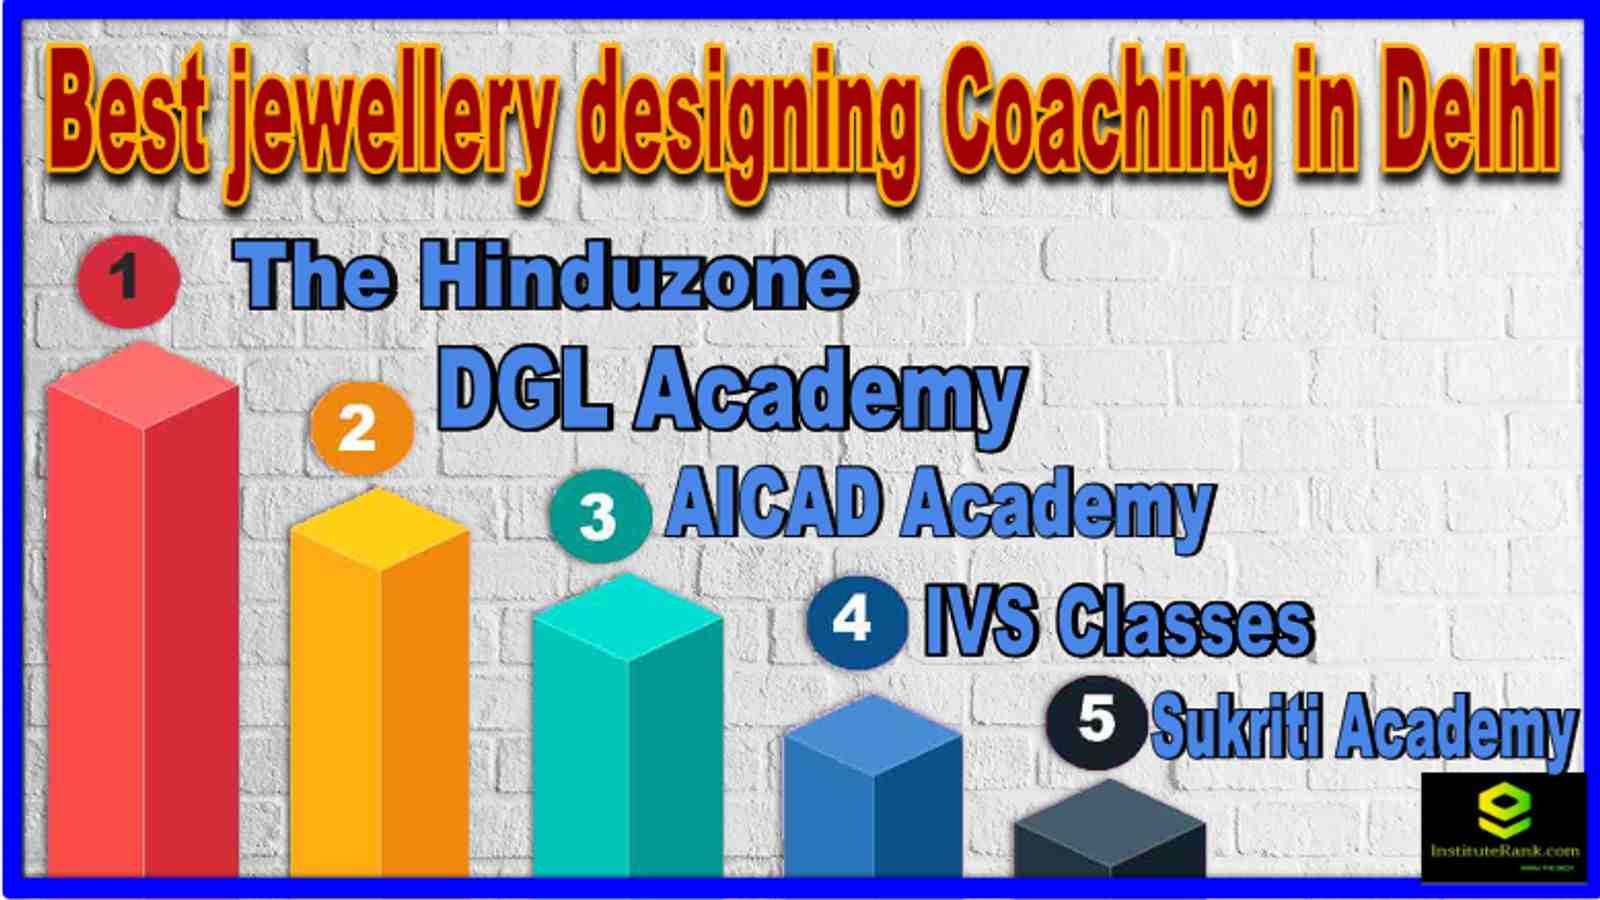 Best jewellery designing Coaching in Delhi